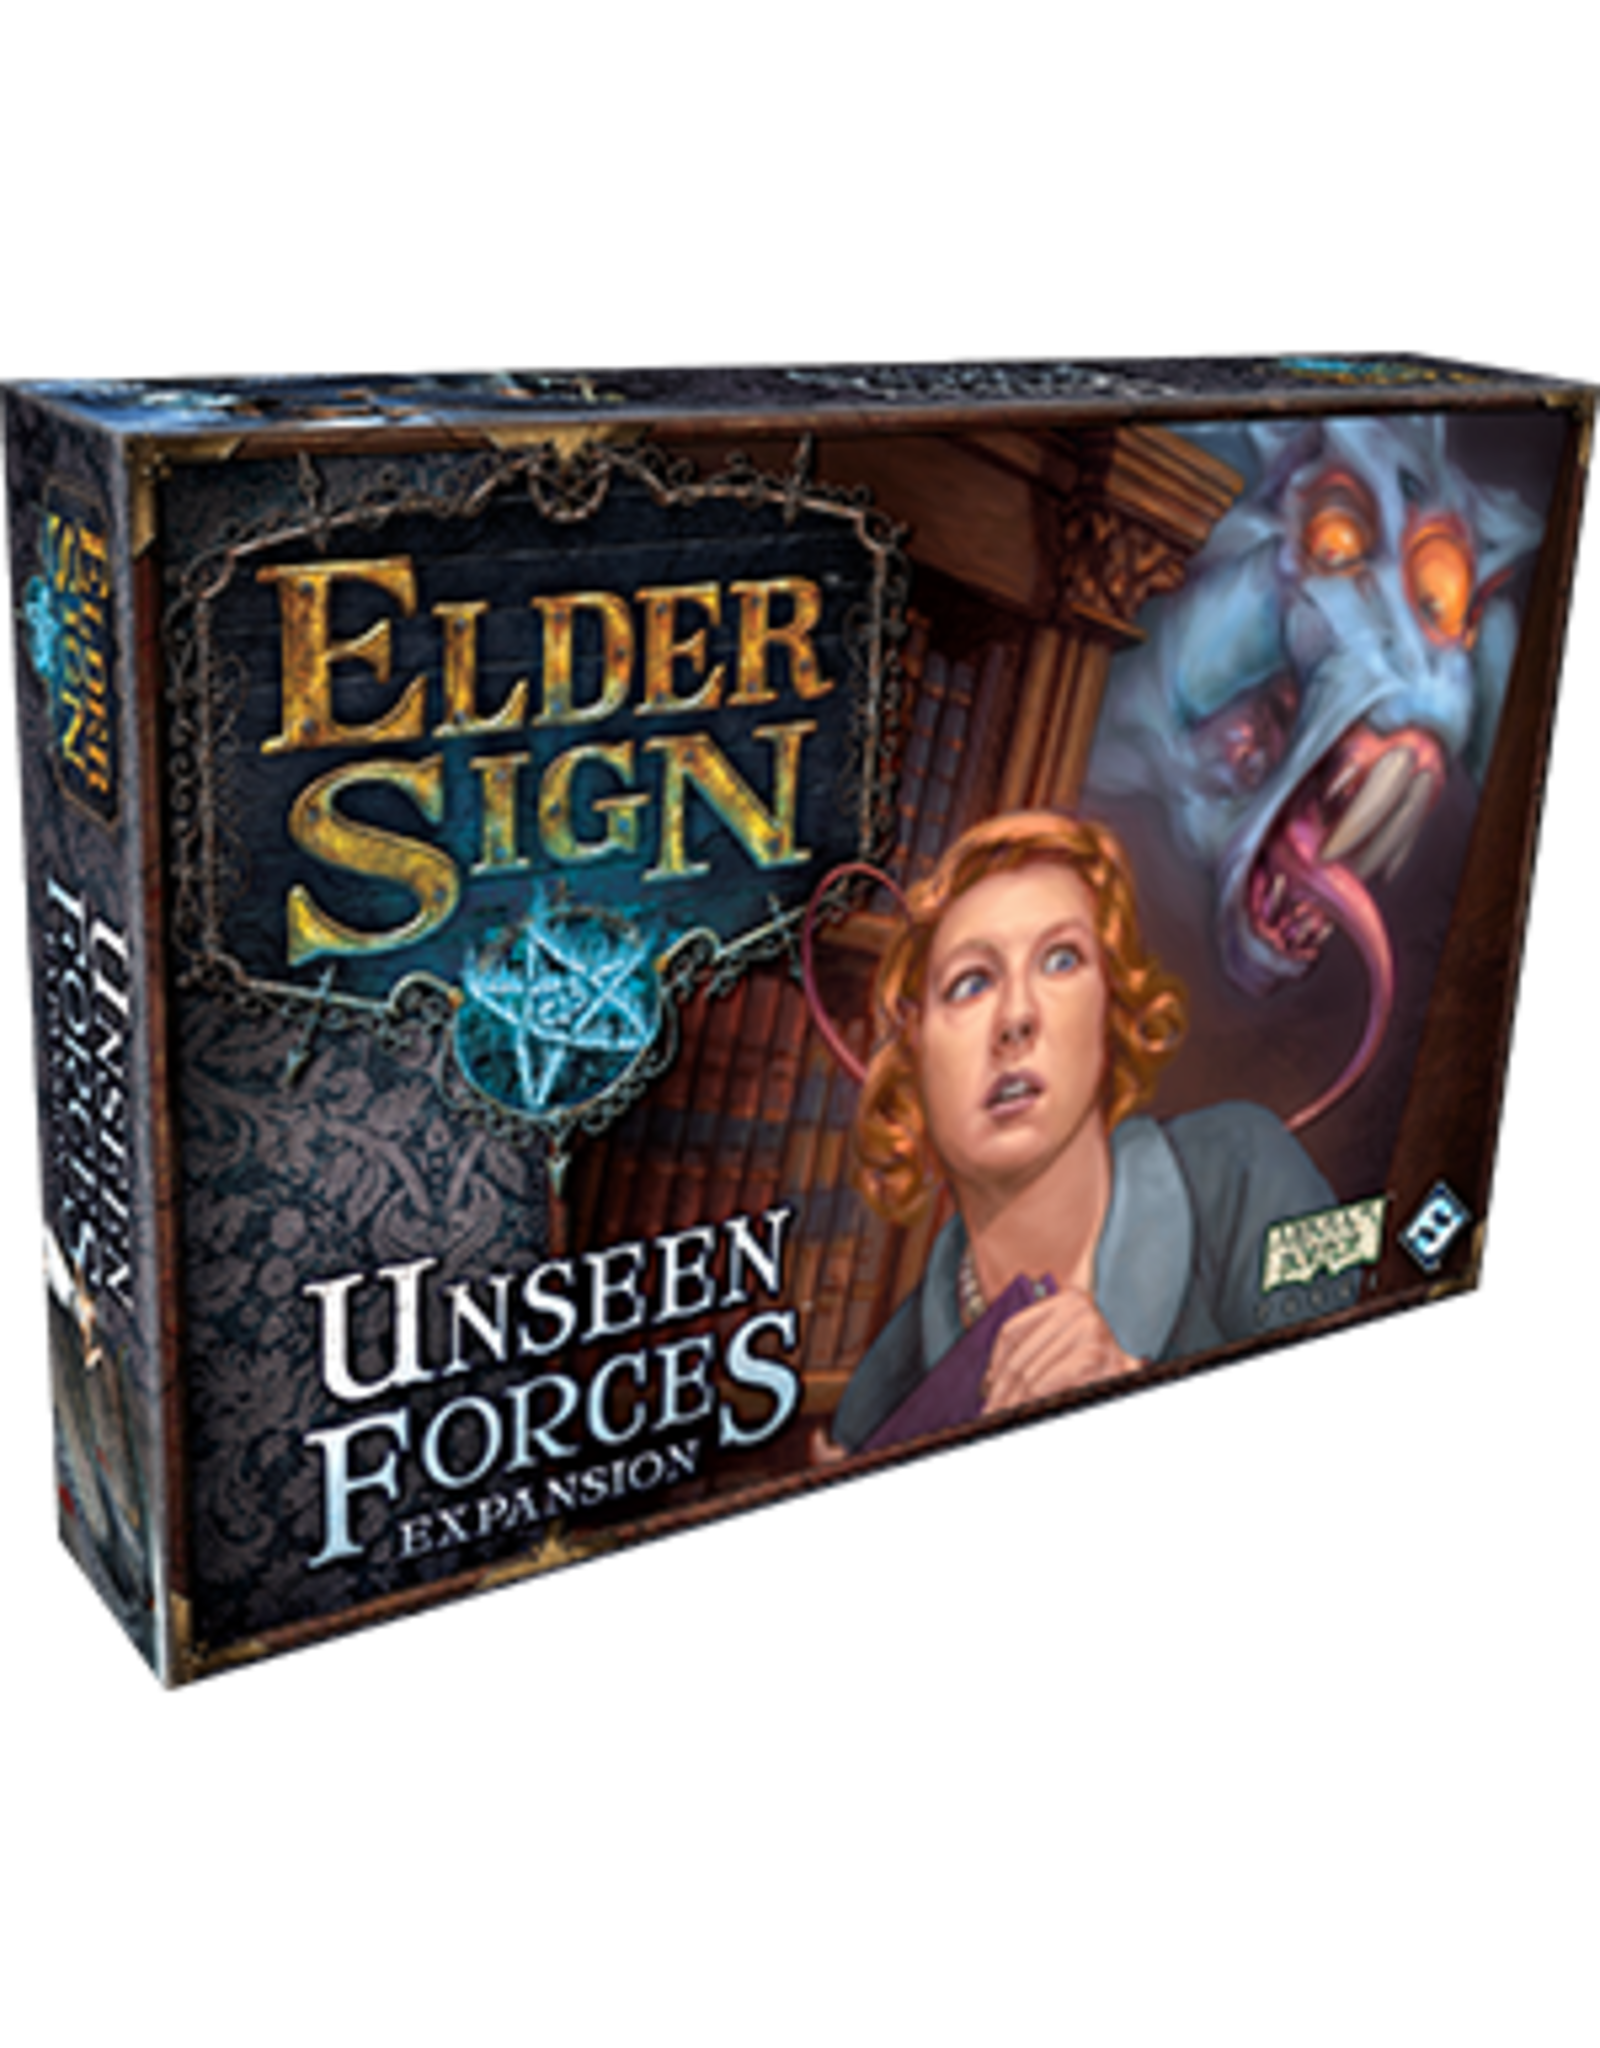 Fantasy Flight Games Elder Sign: Unseen Forces Expansion